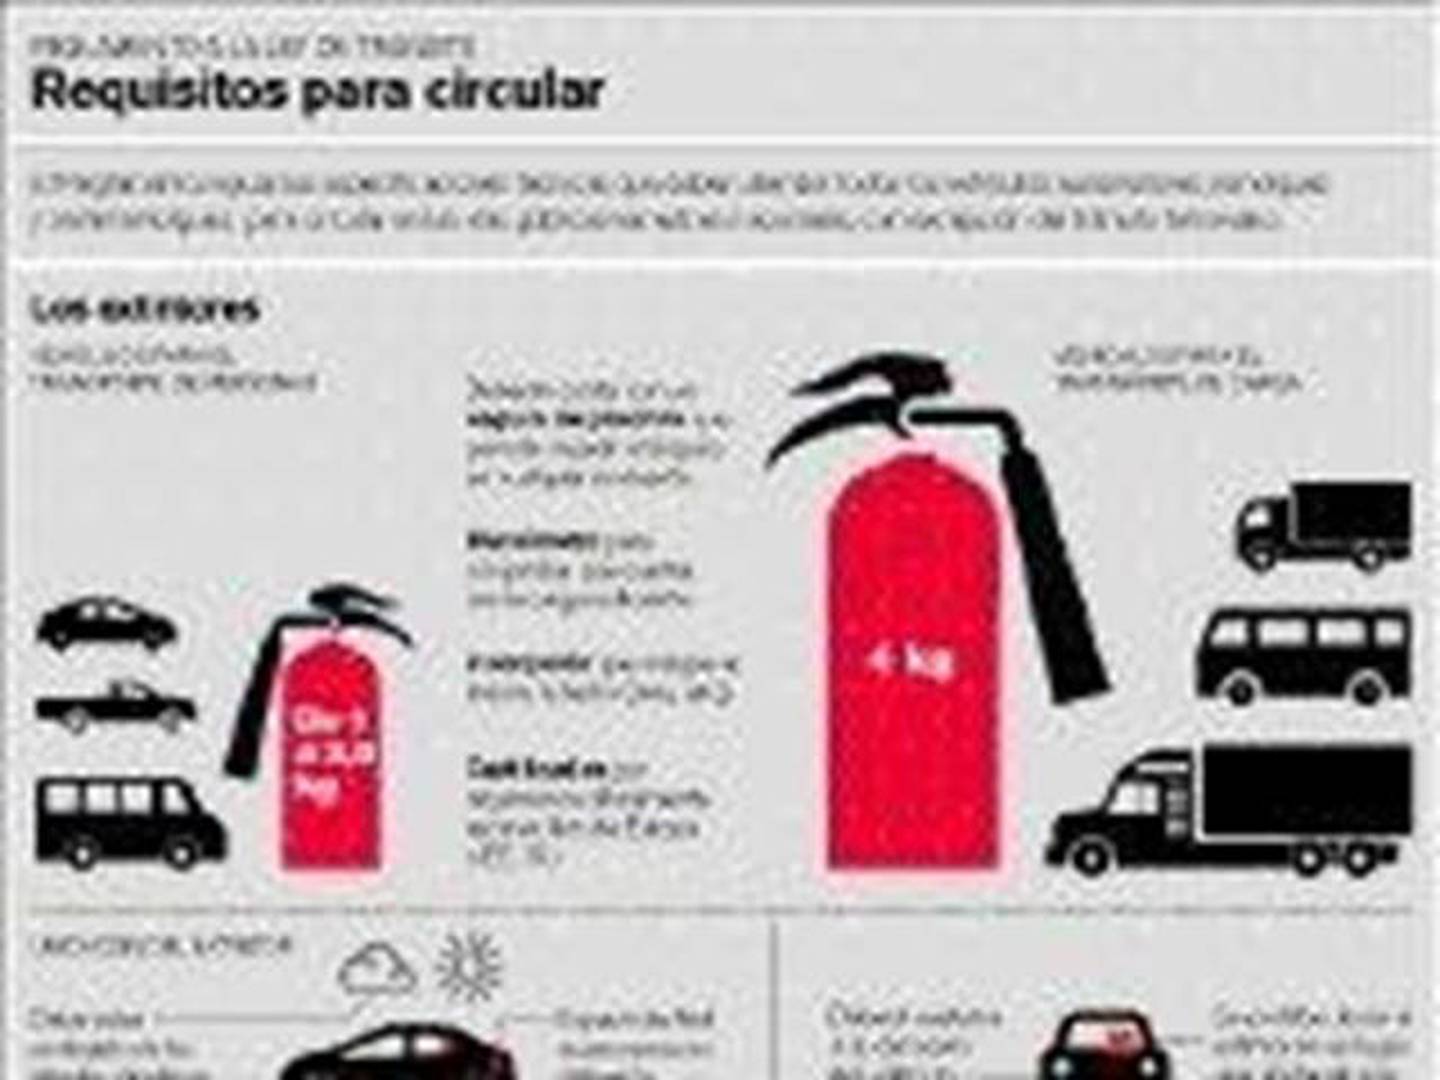 Extintores en vehículos, ¿son obligatorios? - Boletín Eurofesa